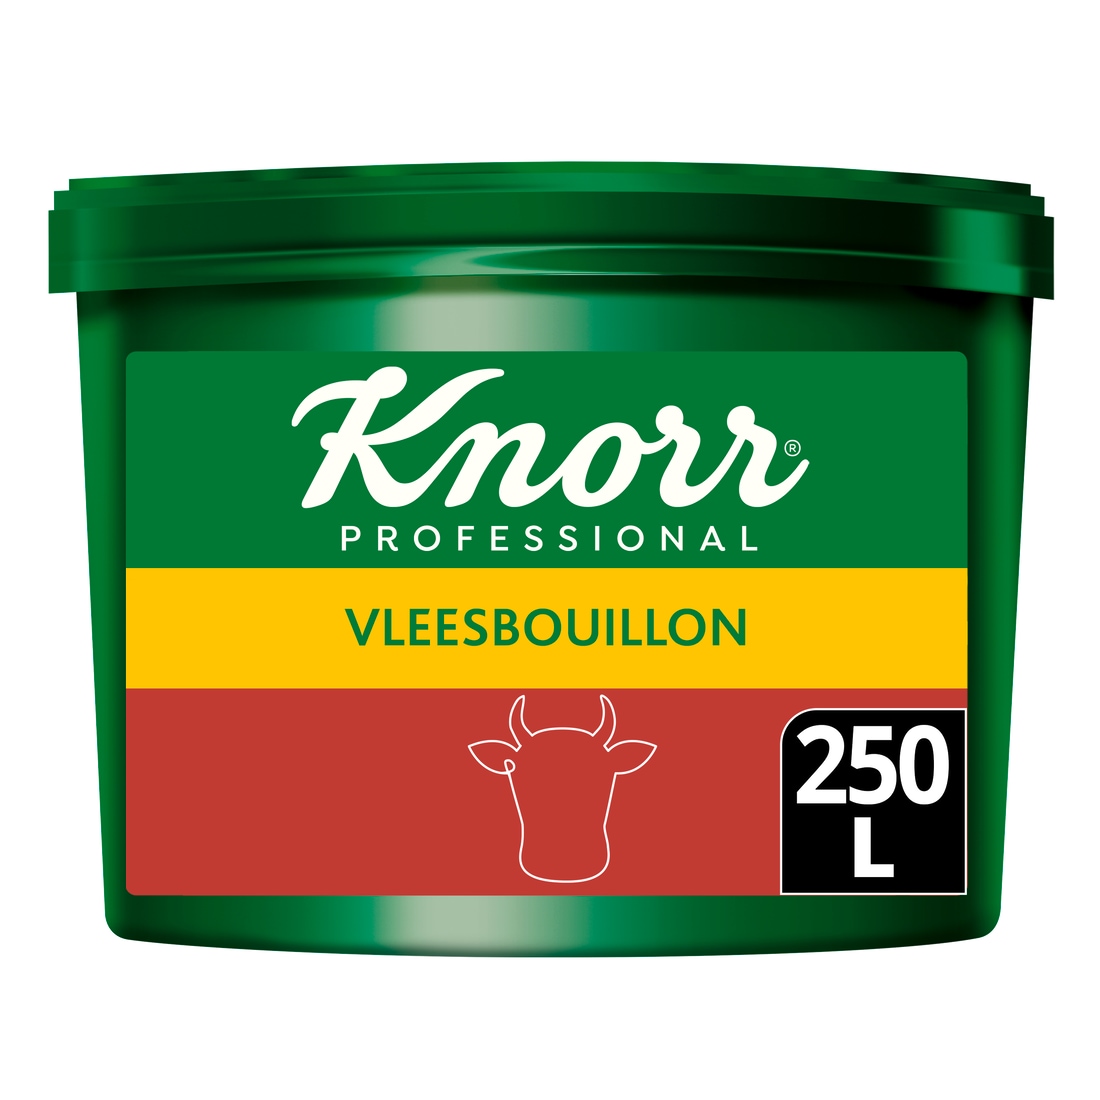 Knorr Professional Vleesbouillon poeder krachtig  250L - 